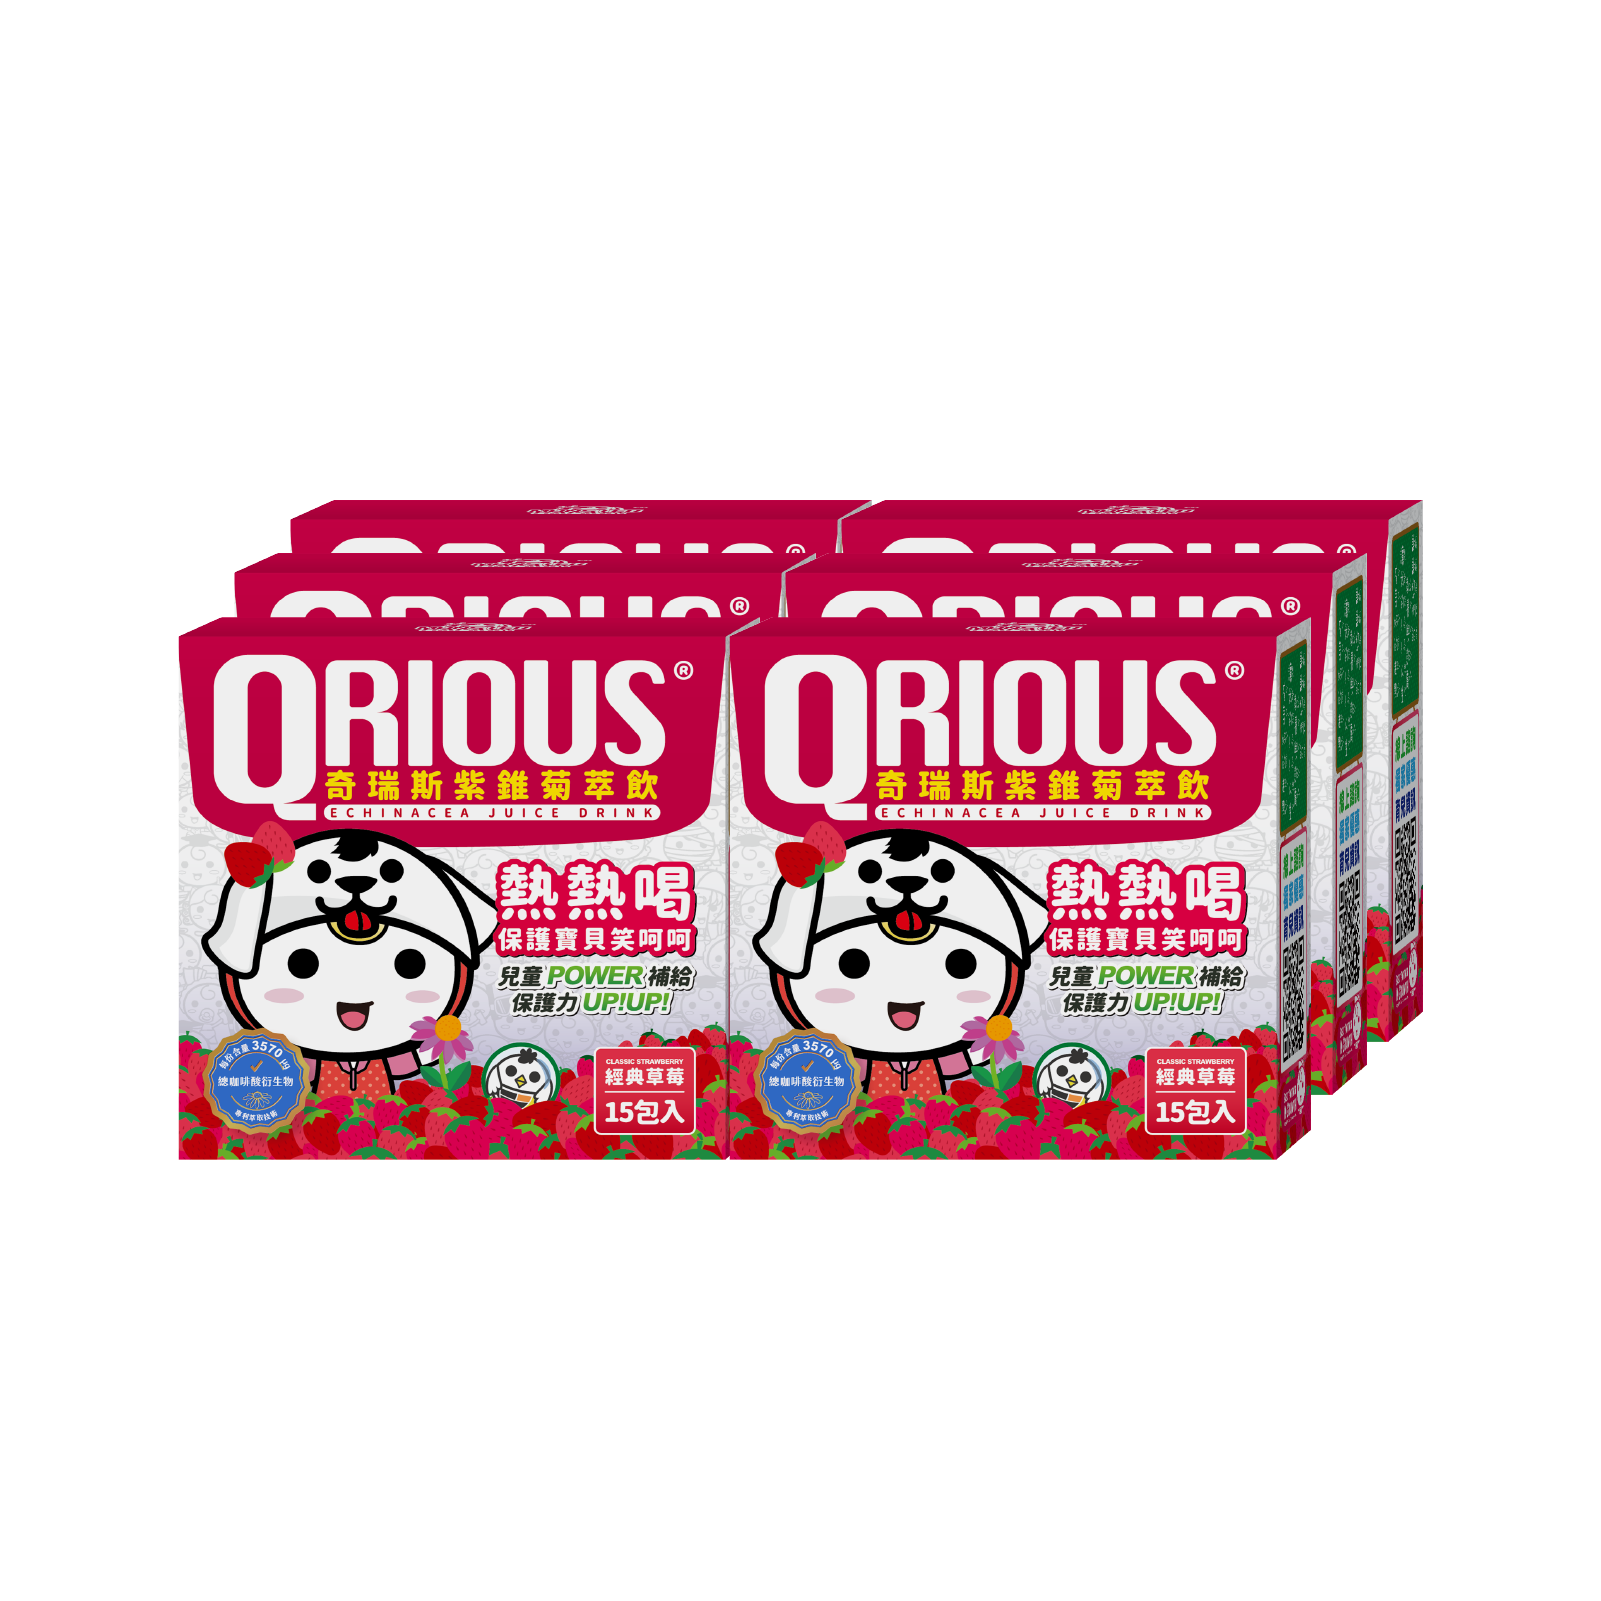 【領券再折扣】調整體質QRIOUS®奇瑞斯紫錐菊/紫錐花萃飲-草莓(6盒)